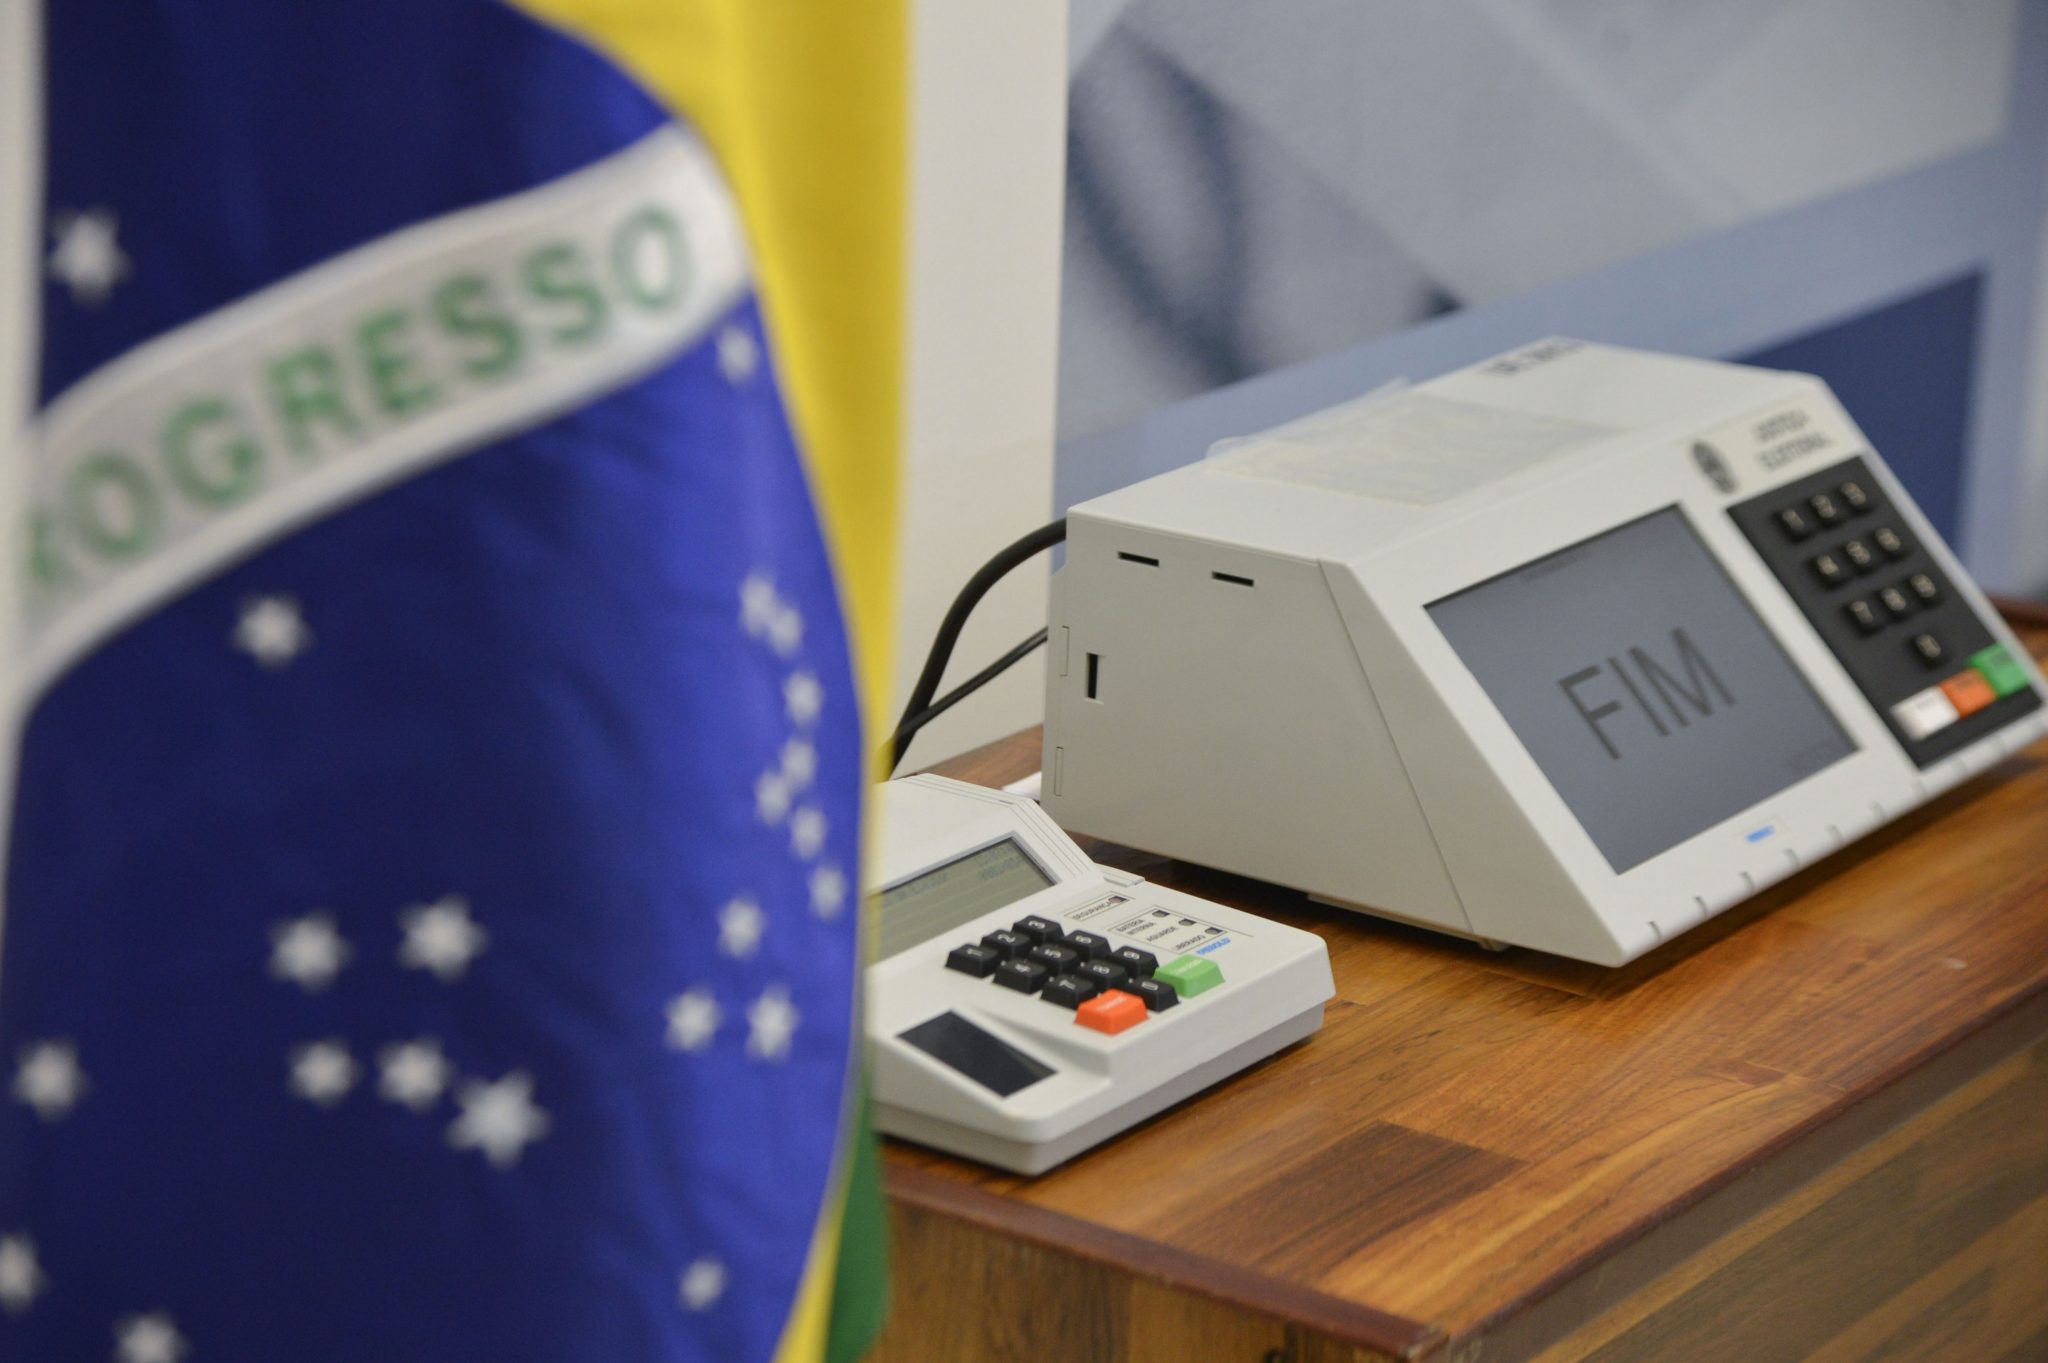 Eleicoes-2016-urnas-eletronicas-brasileiras_00310012016